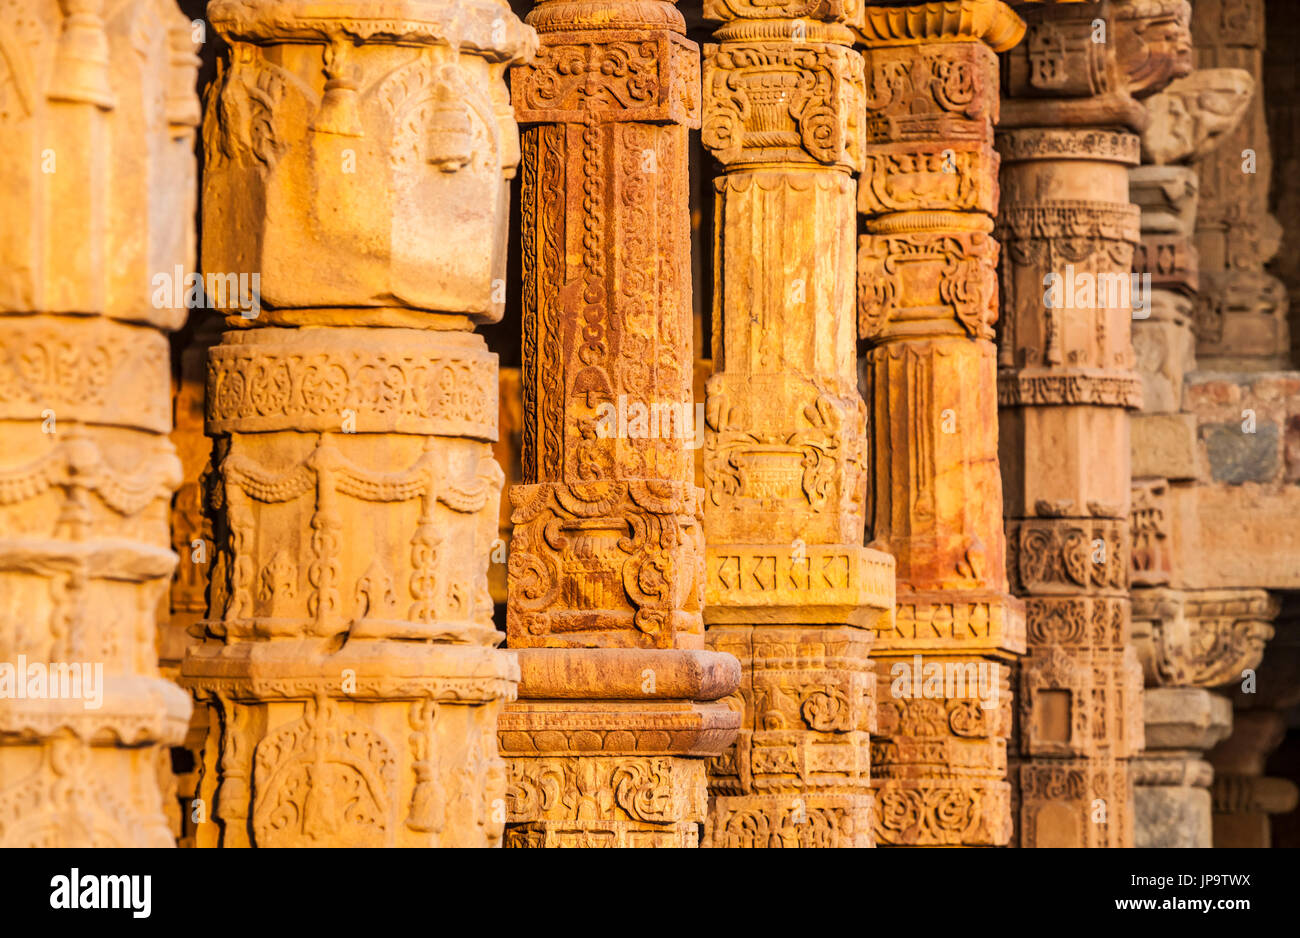 A line of ornate stone columns in the Qutb Complex, Delhi, India. Stock Photo